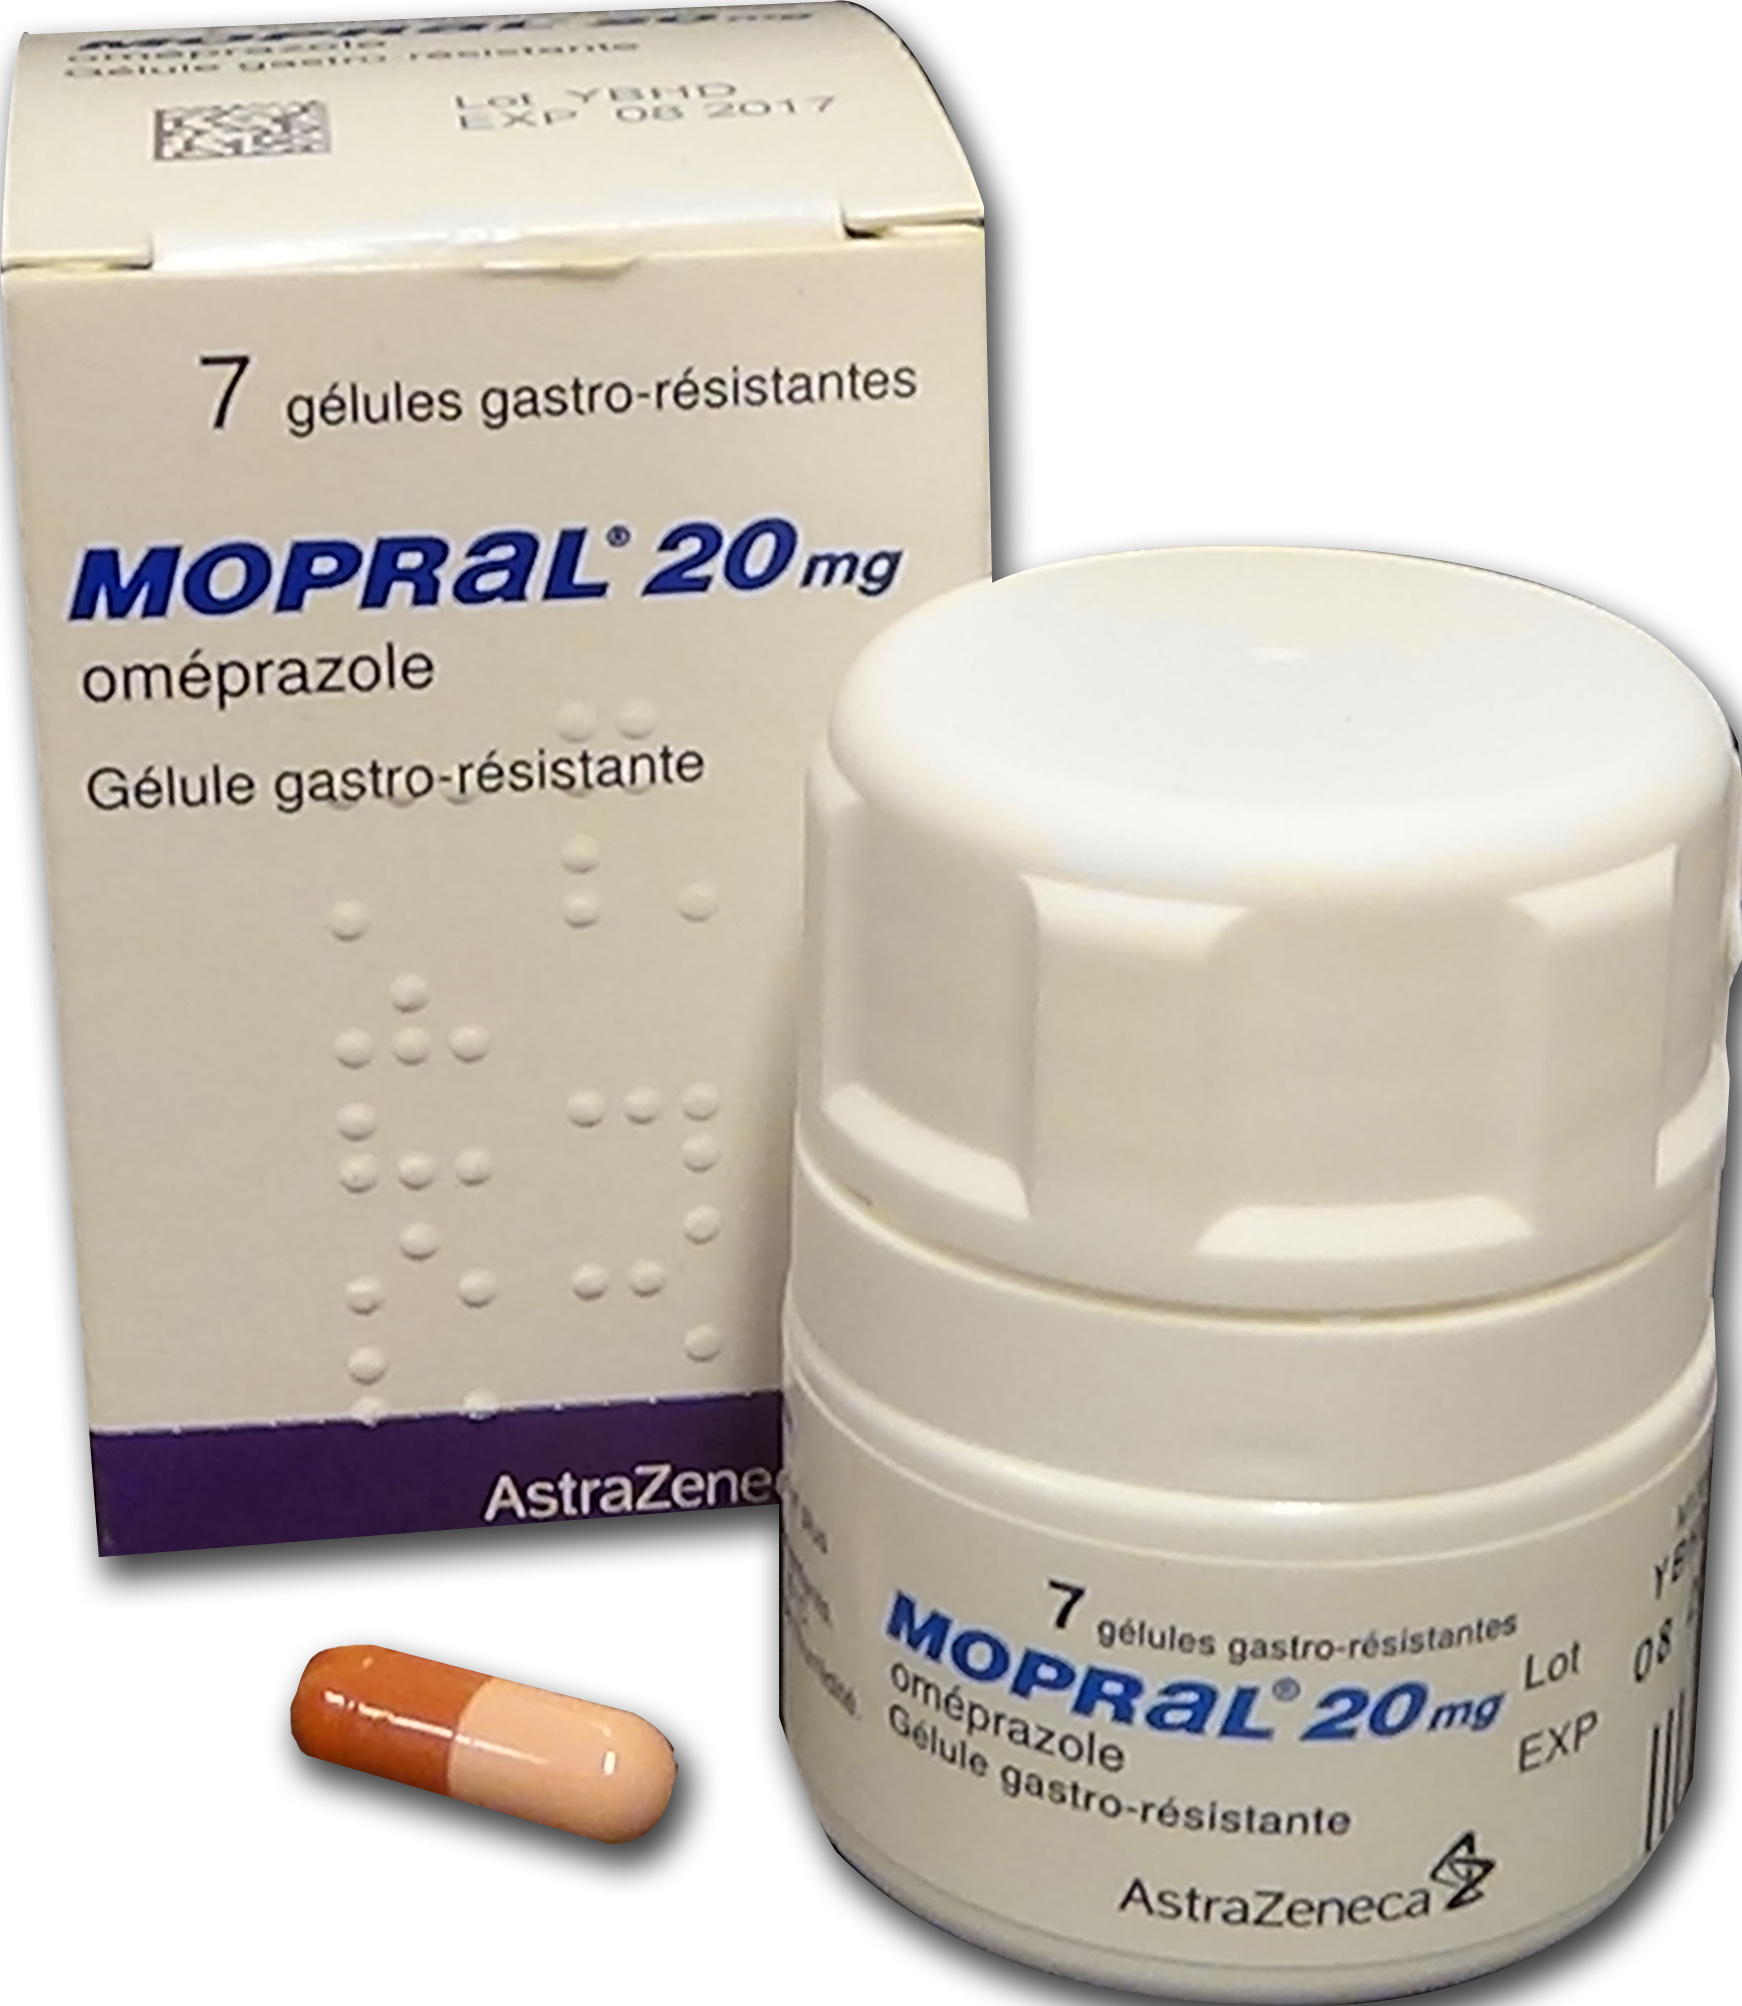 Visuel de l'emballage du médicament MOPRAL 20 mg, gélule gastro-résistante.